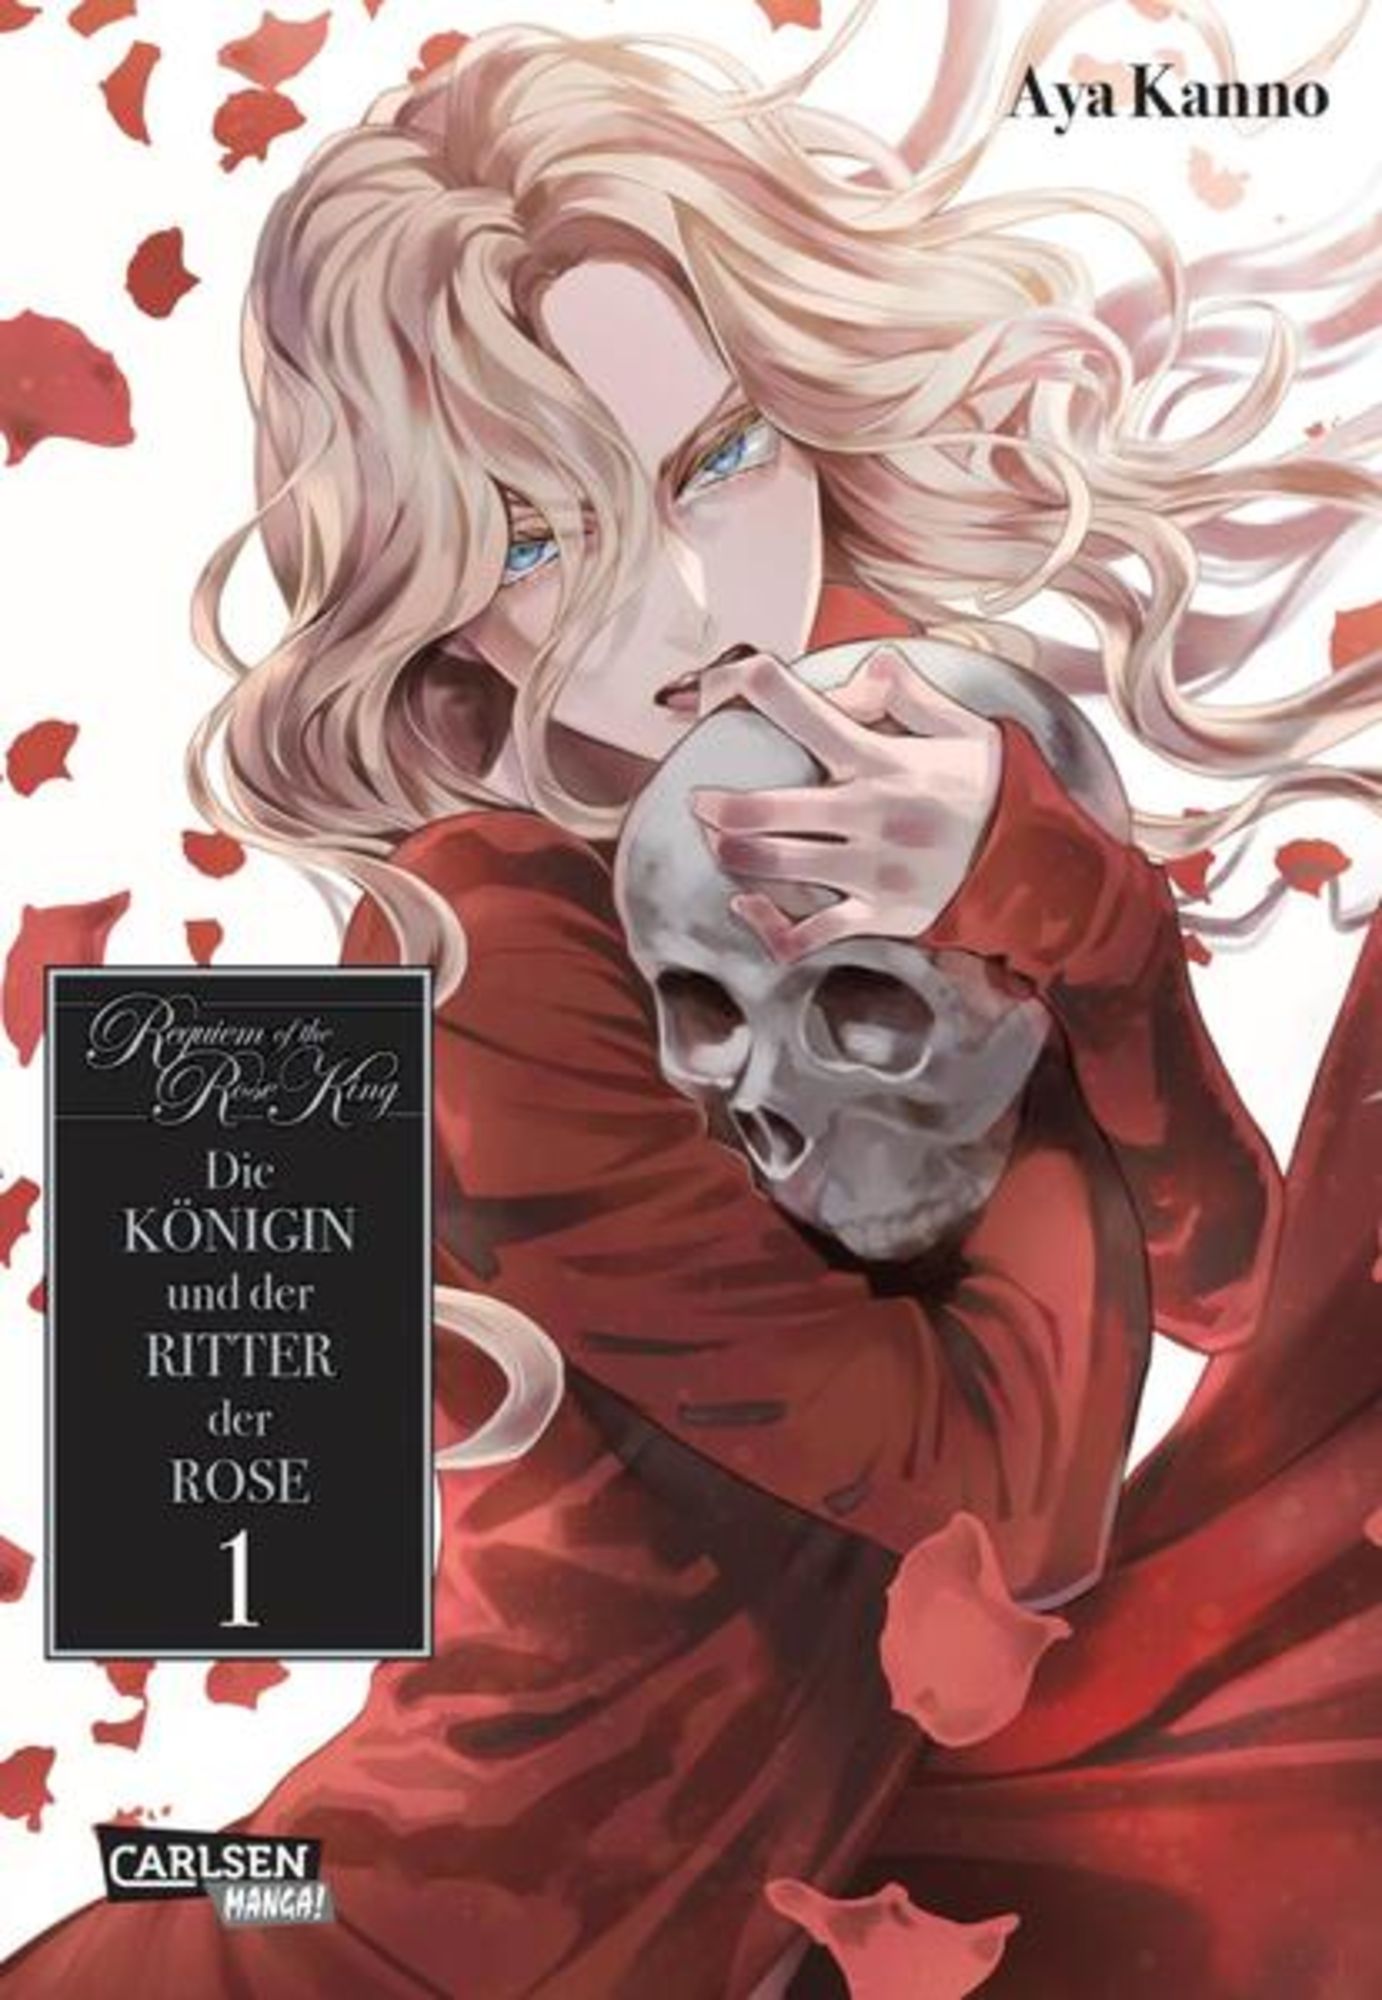 King Of The Night Manga Requiem of the Rose King: Die Königin und der Ritter der Rose 1' von 'Aya  Kanno' - Buch - '978-3-551-73059-6'